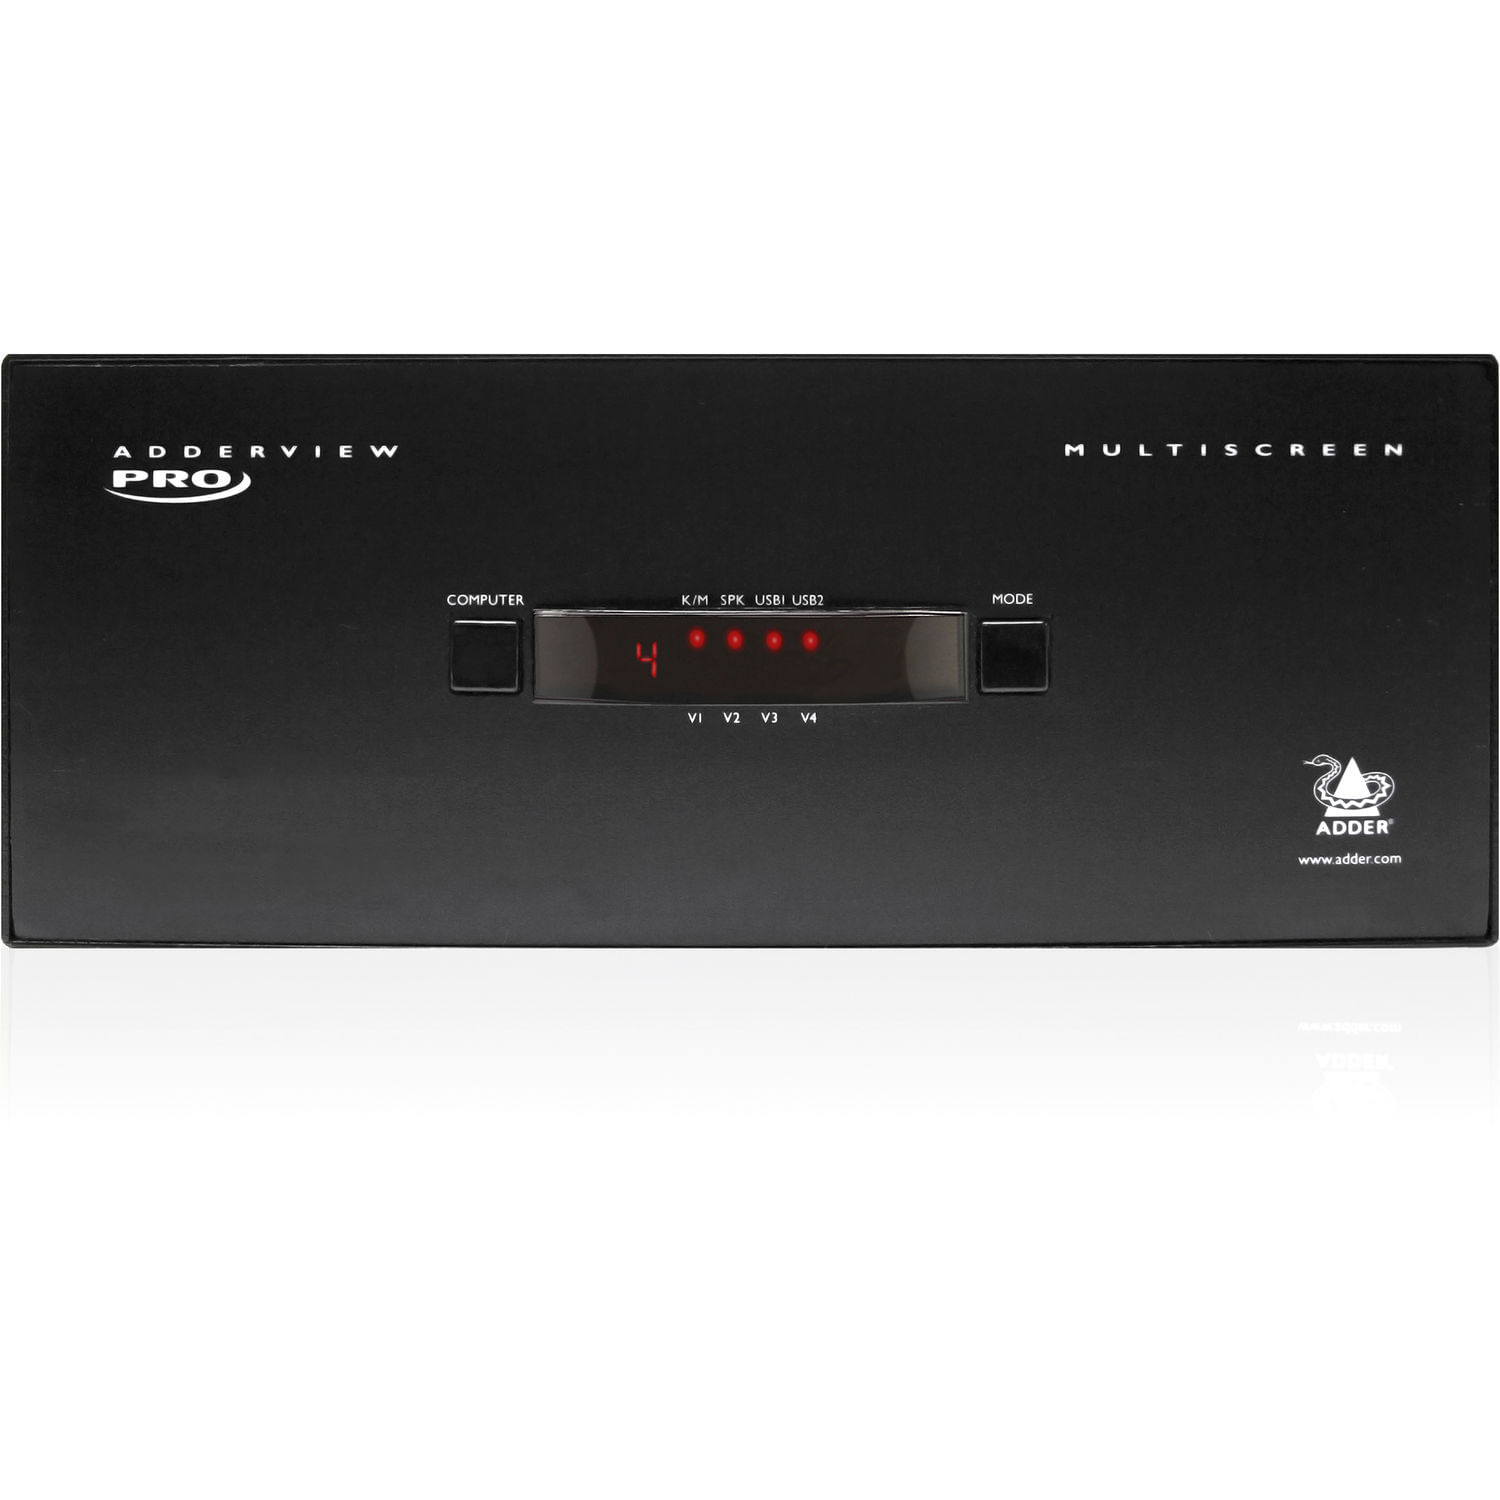 Switch de Video y Periféricos Adder Adderview 4 Pro Dual Link Dvi I Un Cabezal de Video